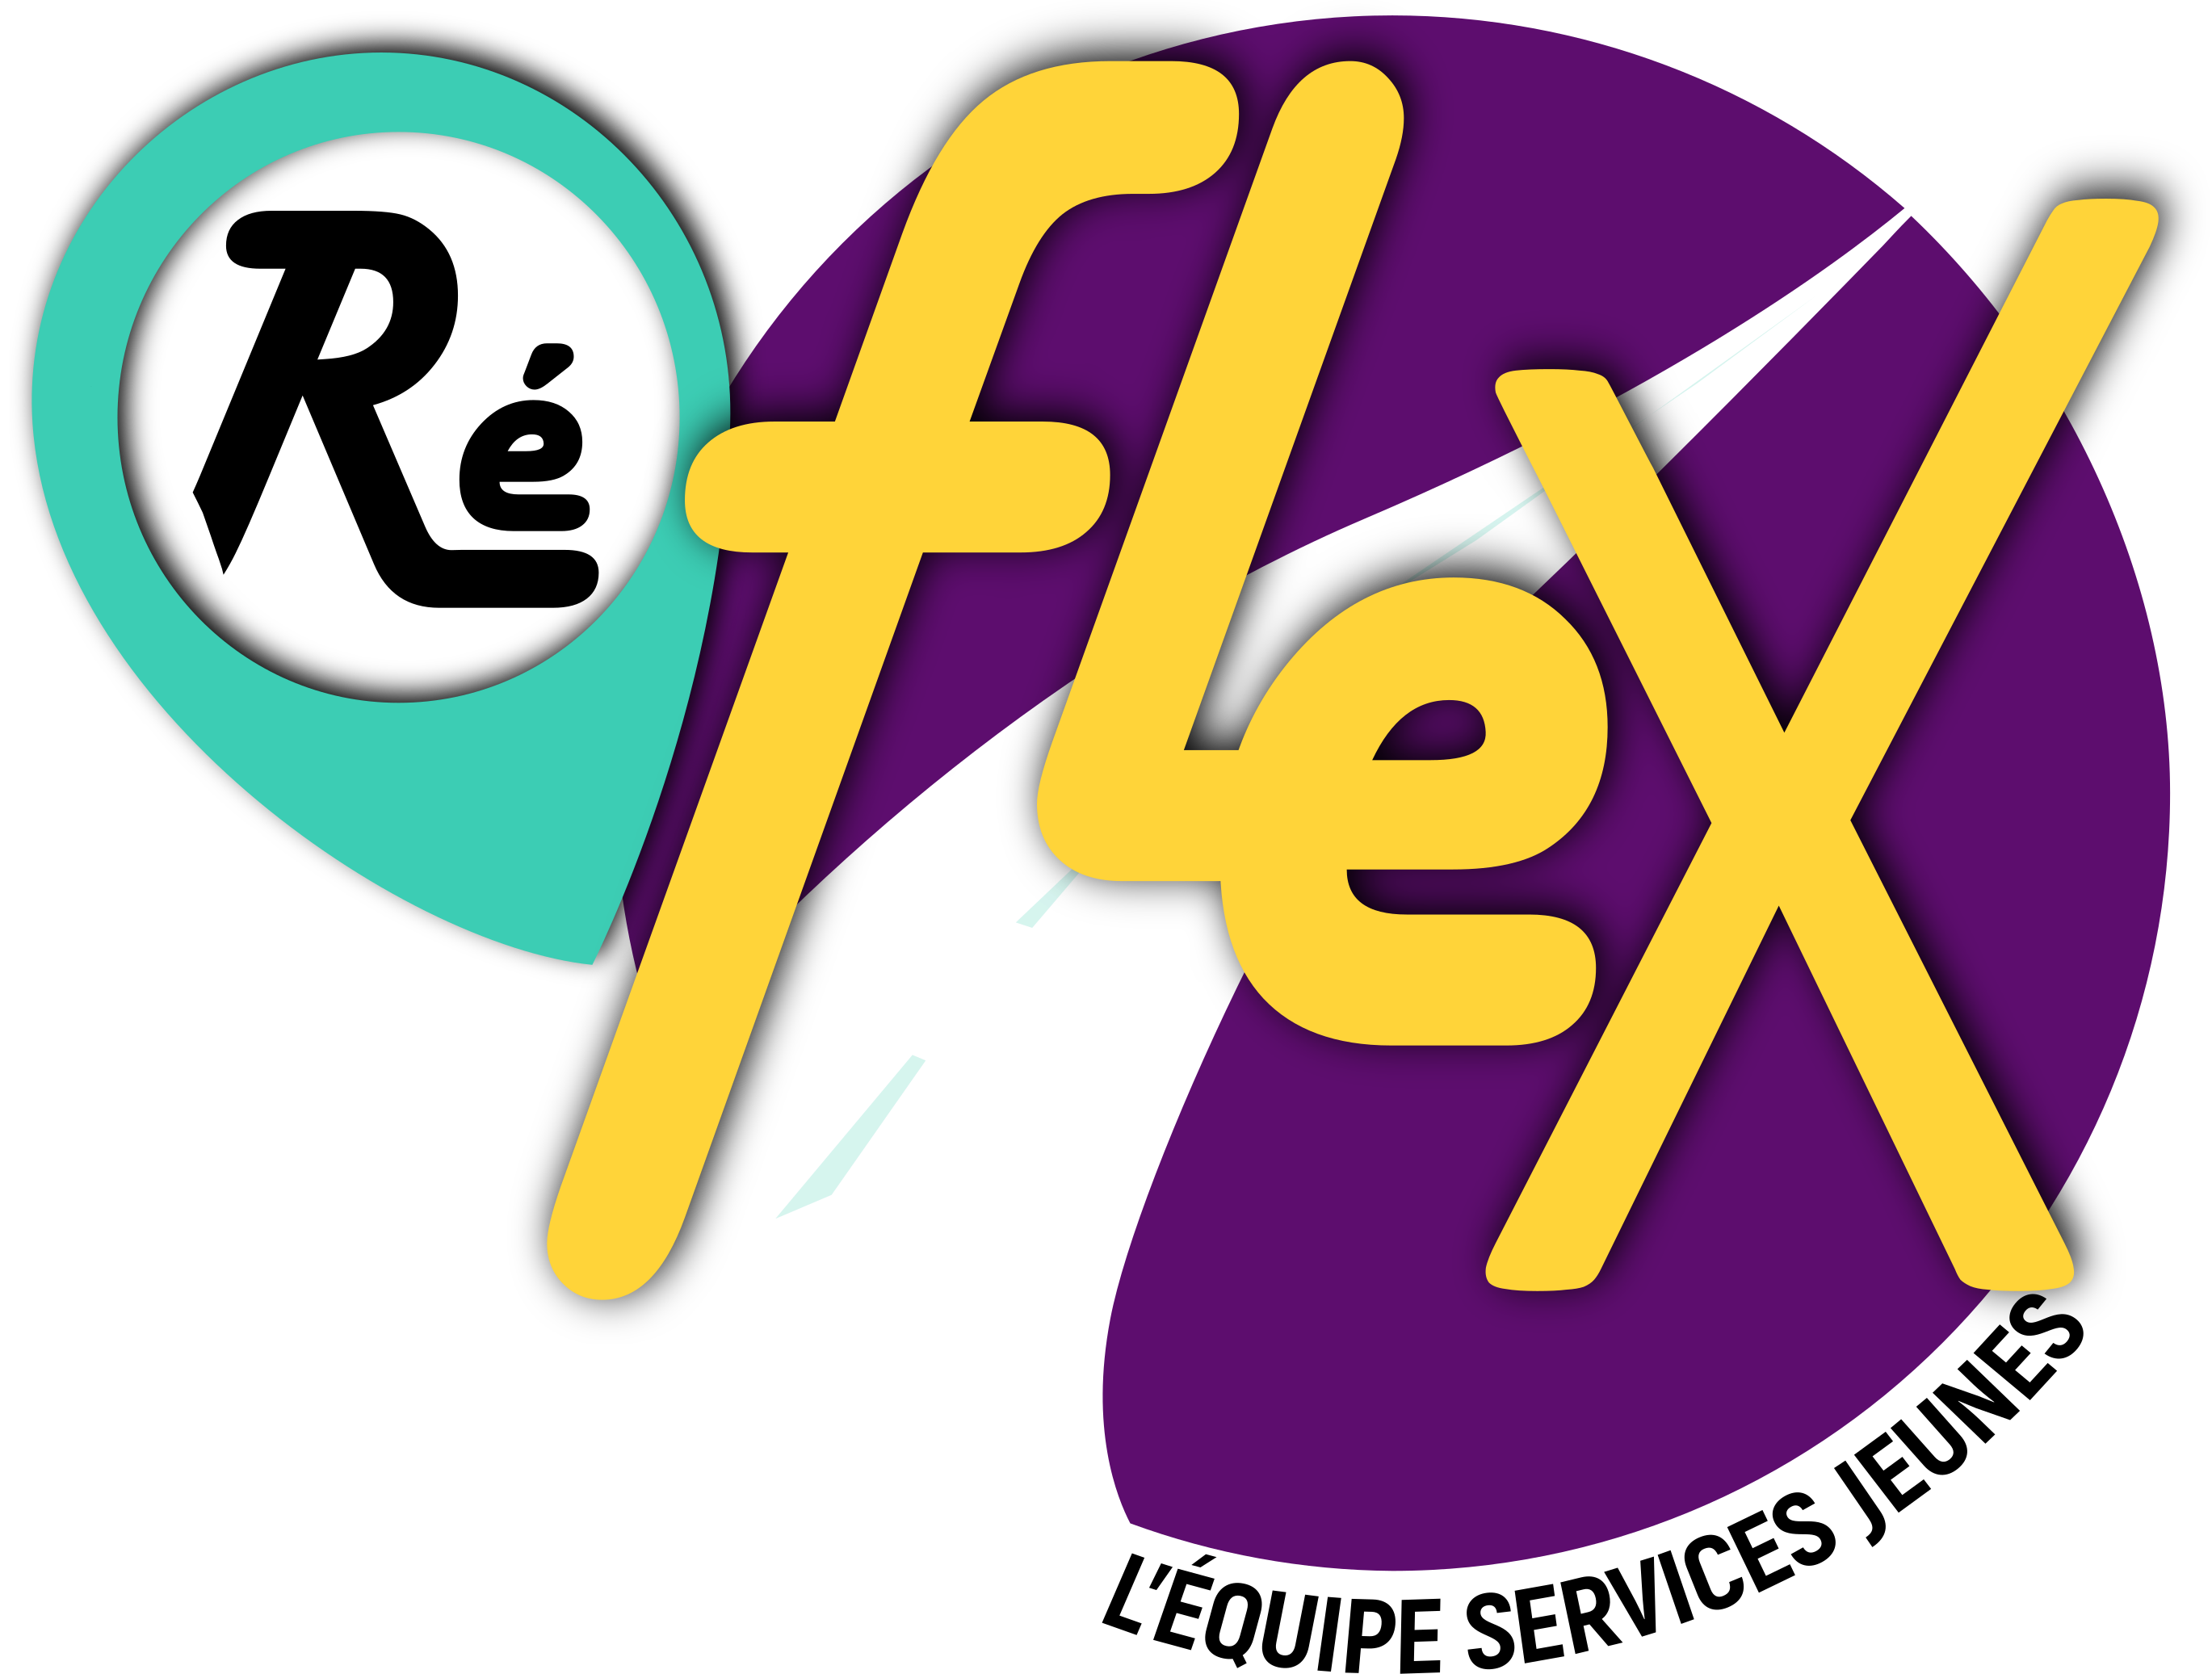 logo reflex v8.png